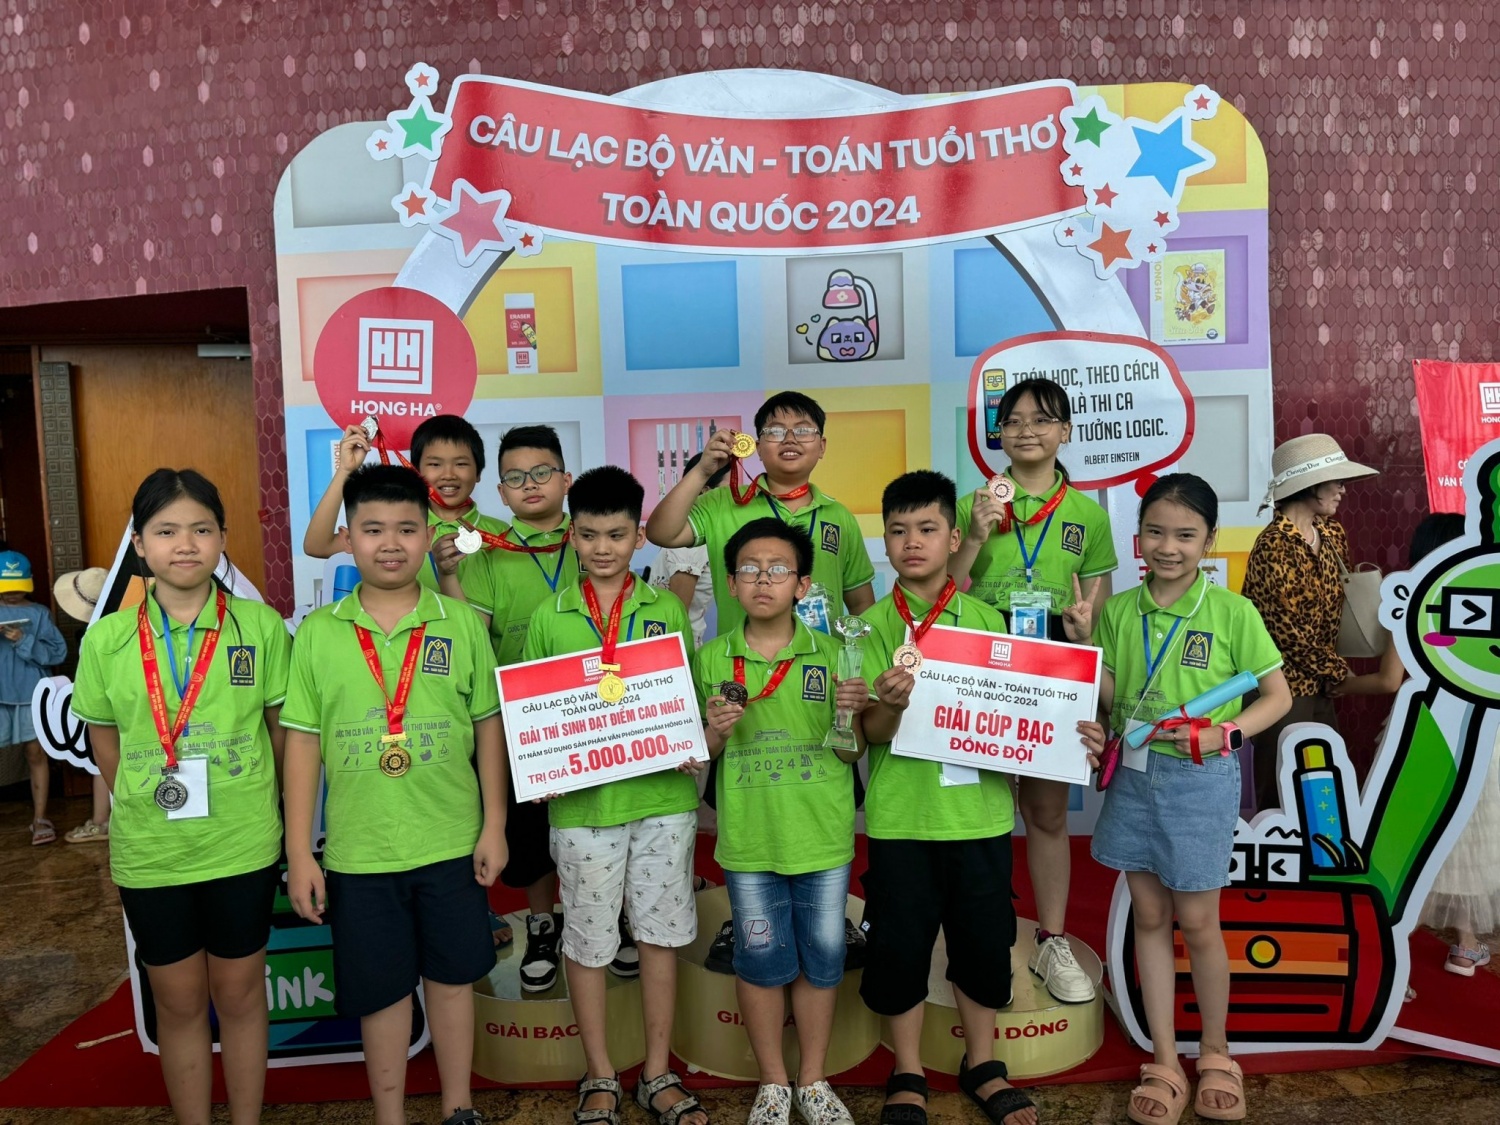 Hà Nội: Đoàn học sinh quận Ba Đình xuất sắc giành nhiều giải cao trong cuộc thi CLB Văn   Toán tuổi thơ toàn quốc 2024